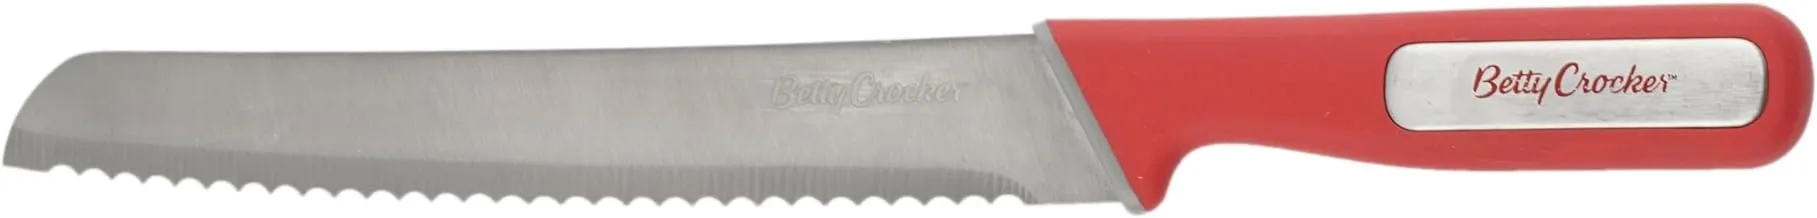 Betty Crocker Stainless Steel Bread Knife (20.5CM) Red